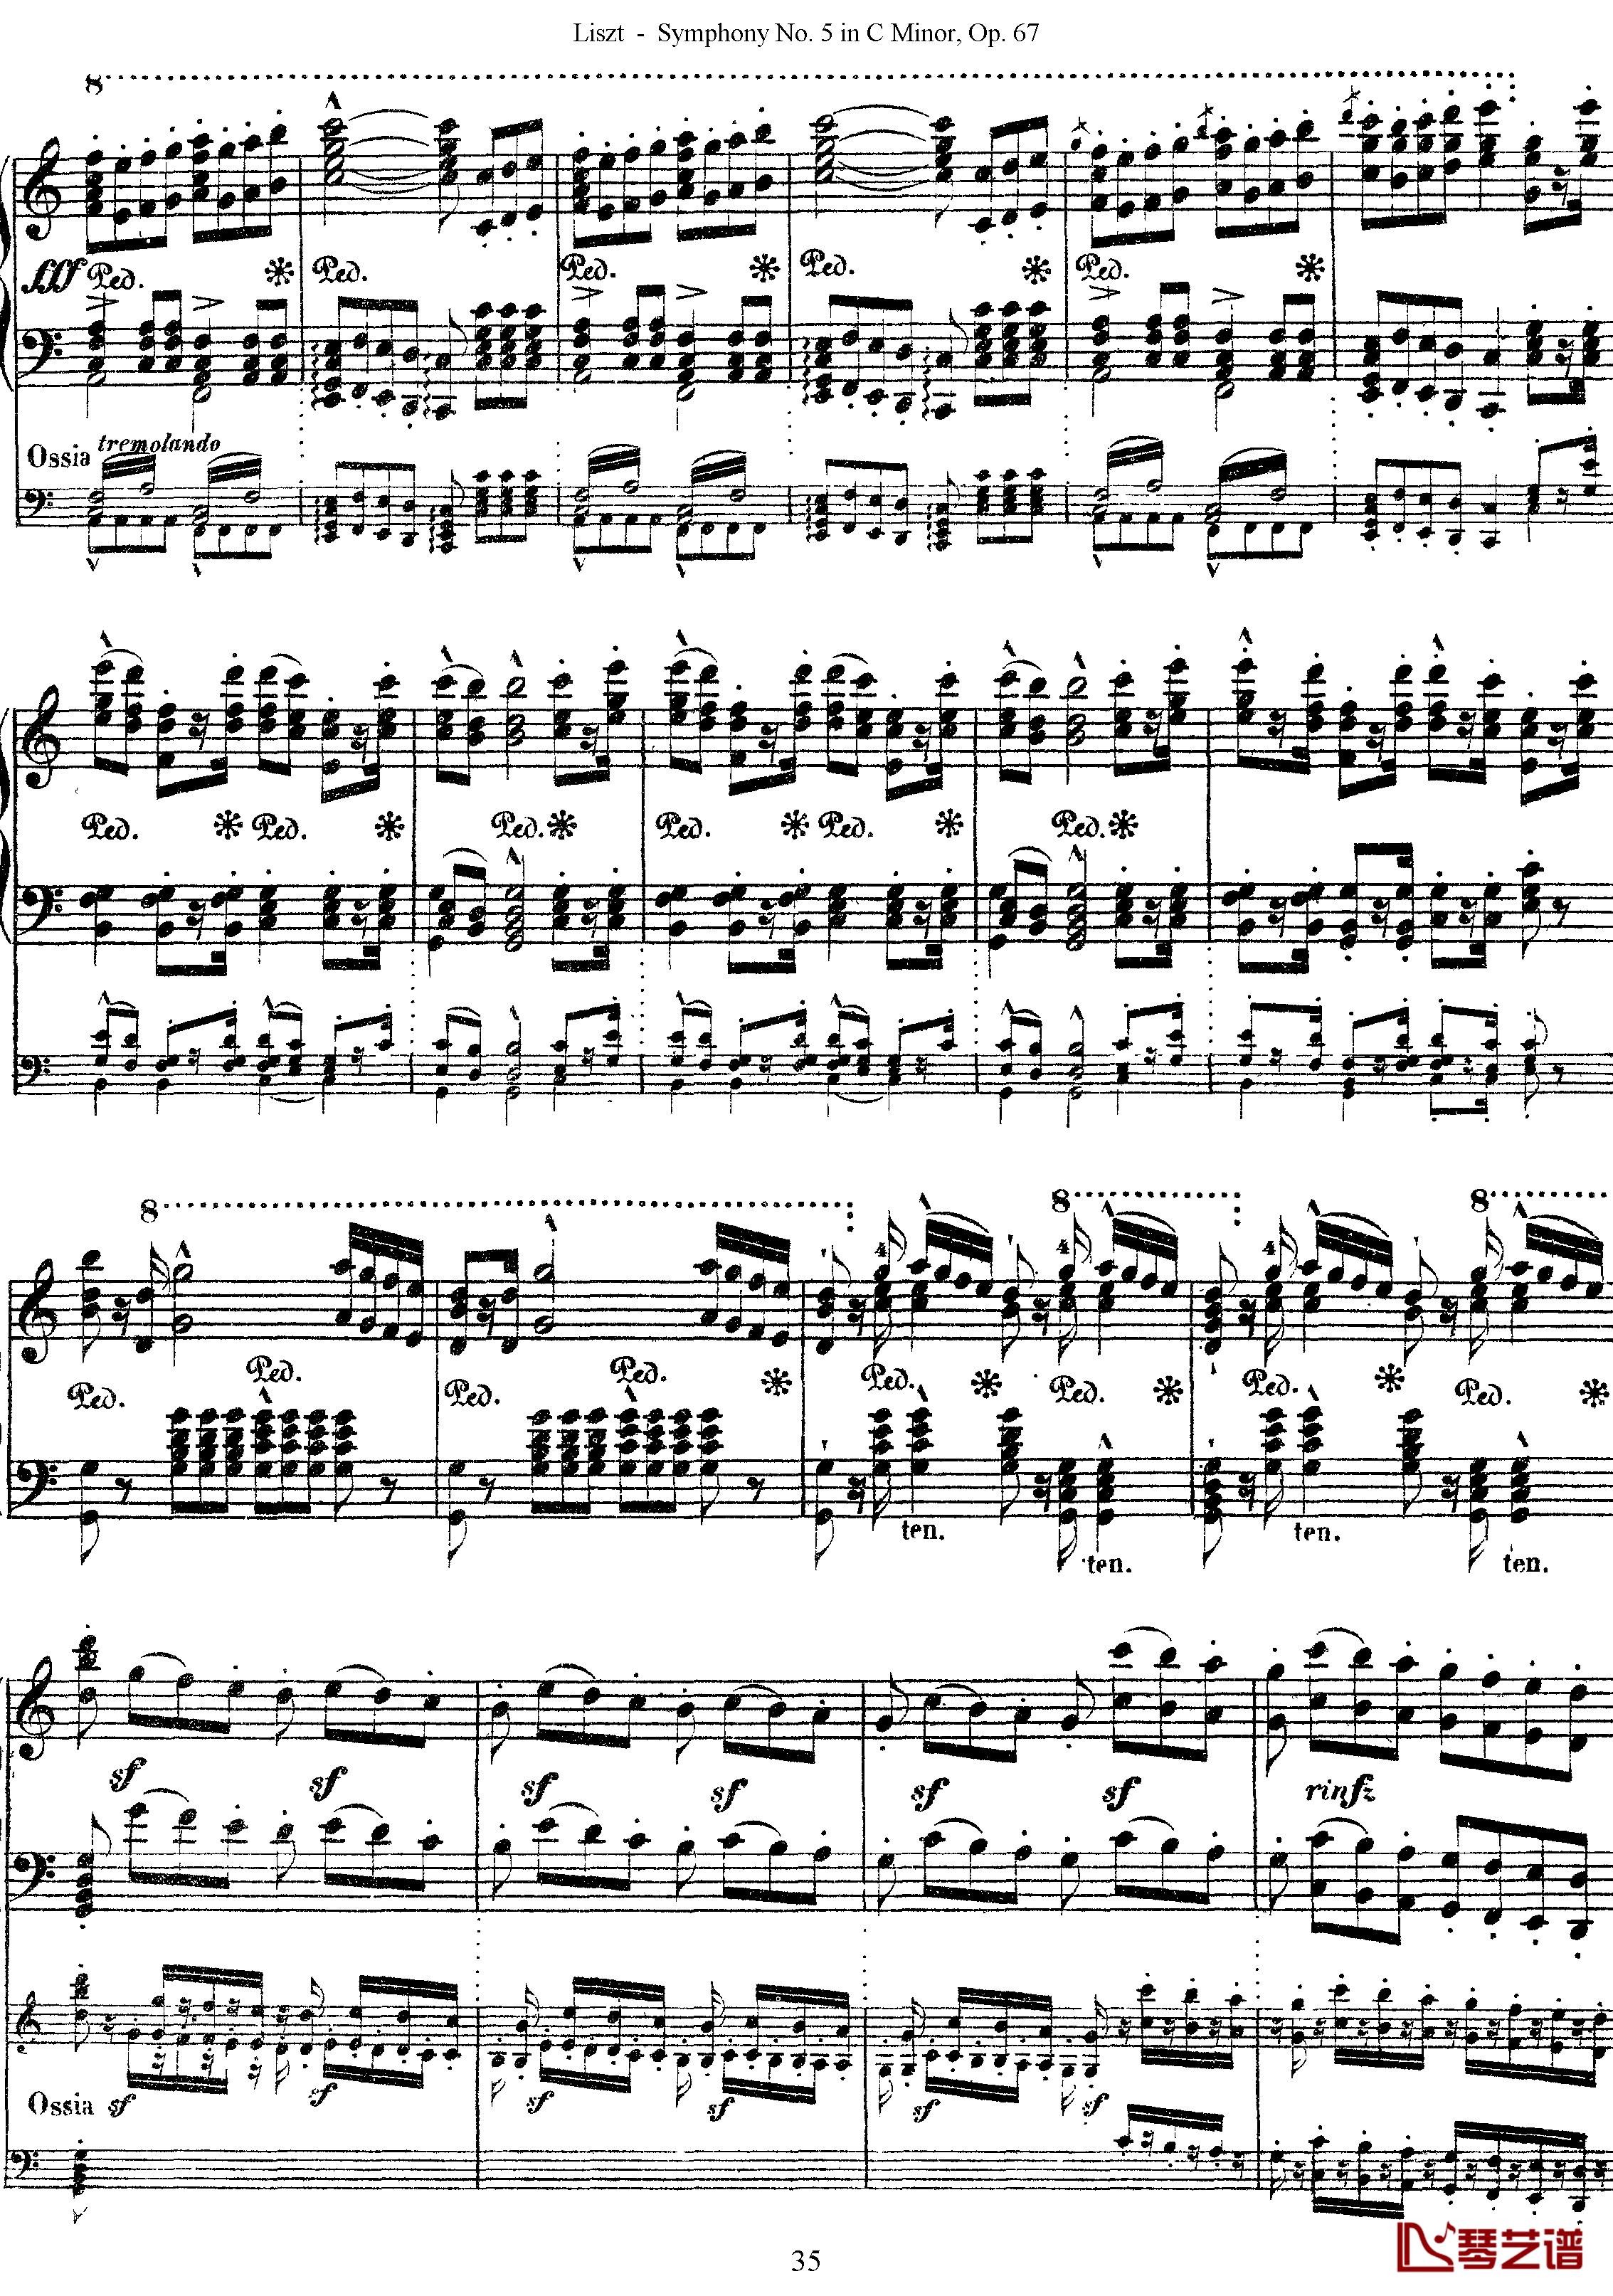 第五交响乐的钢琴曲钢琴谱-李斯特-李斯特改编自贝多芬35